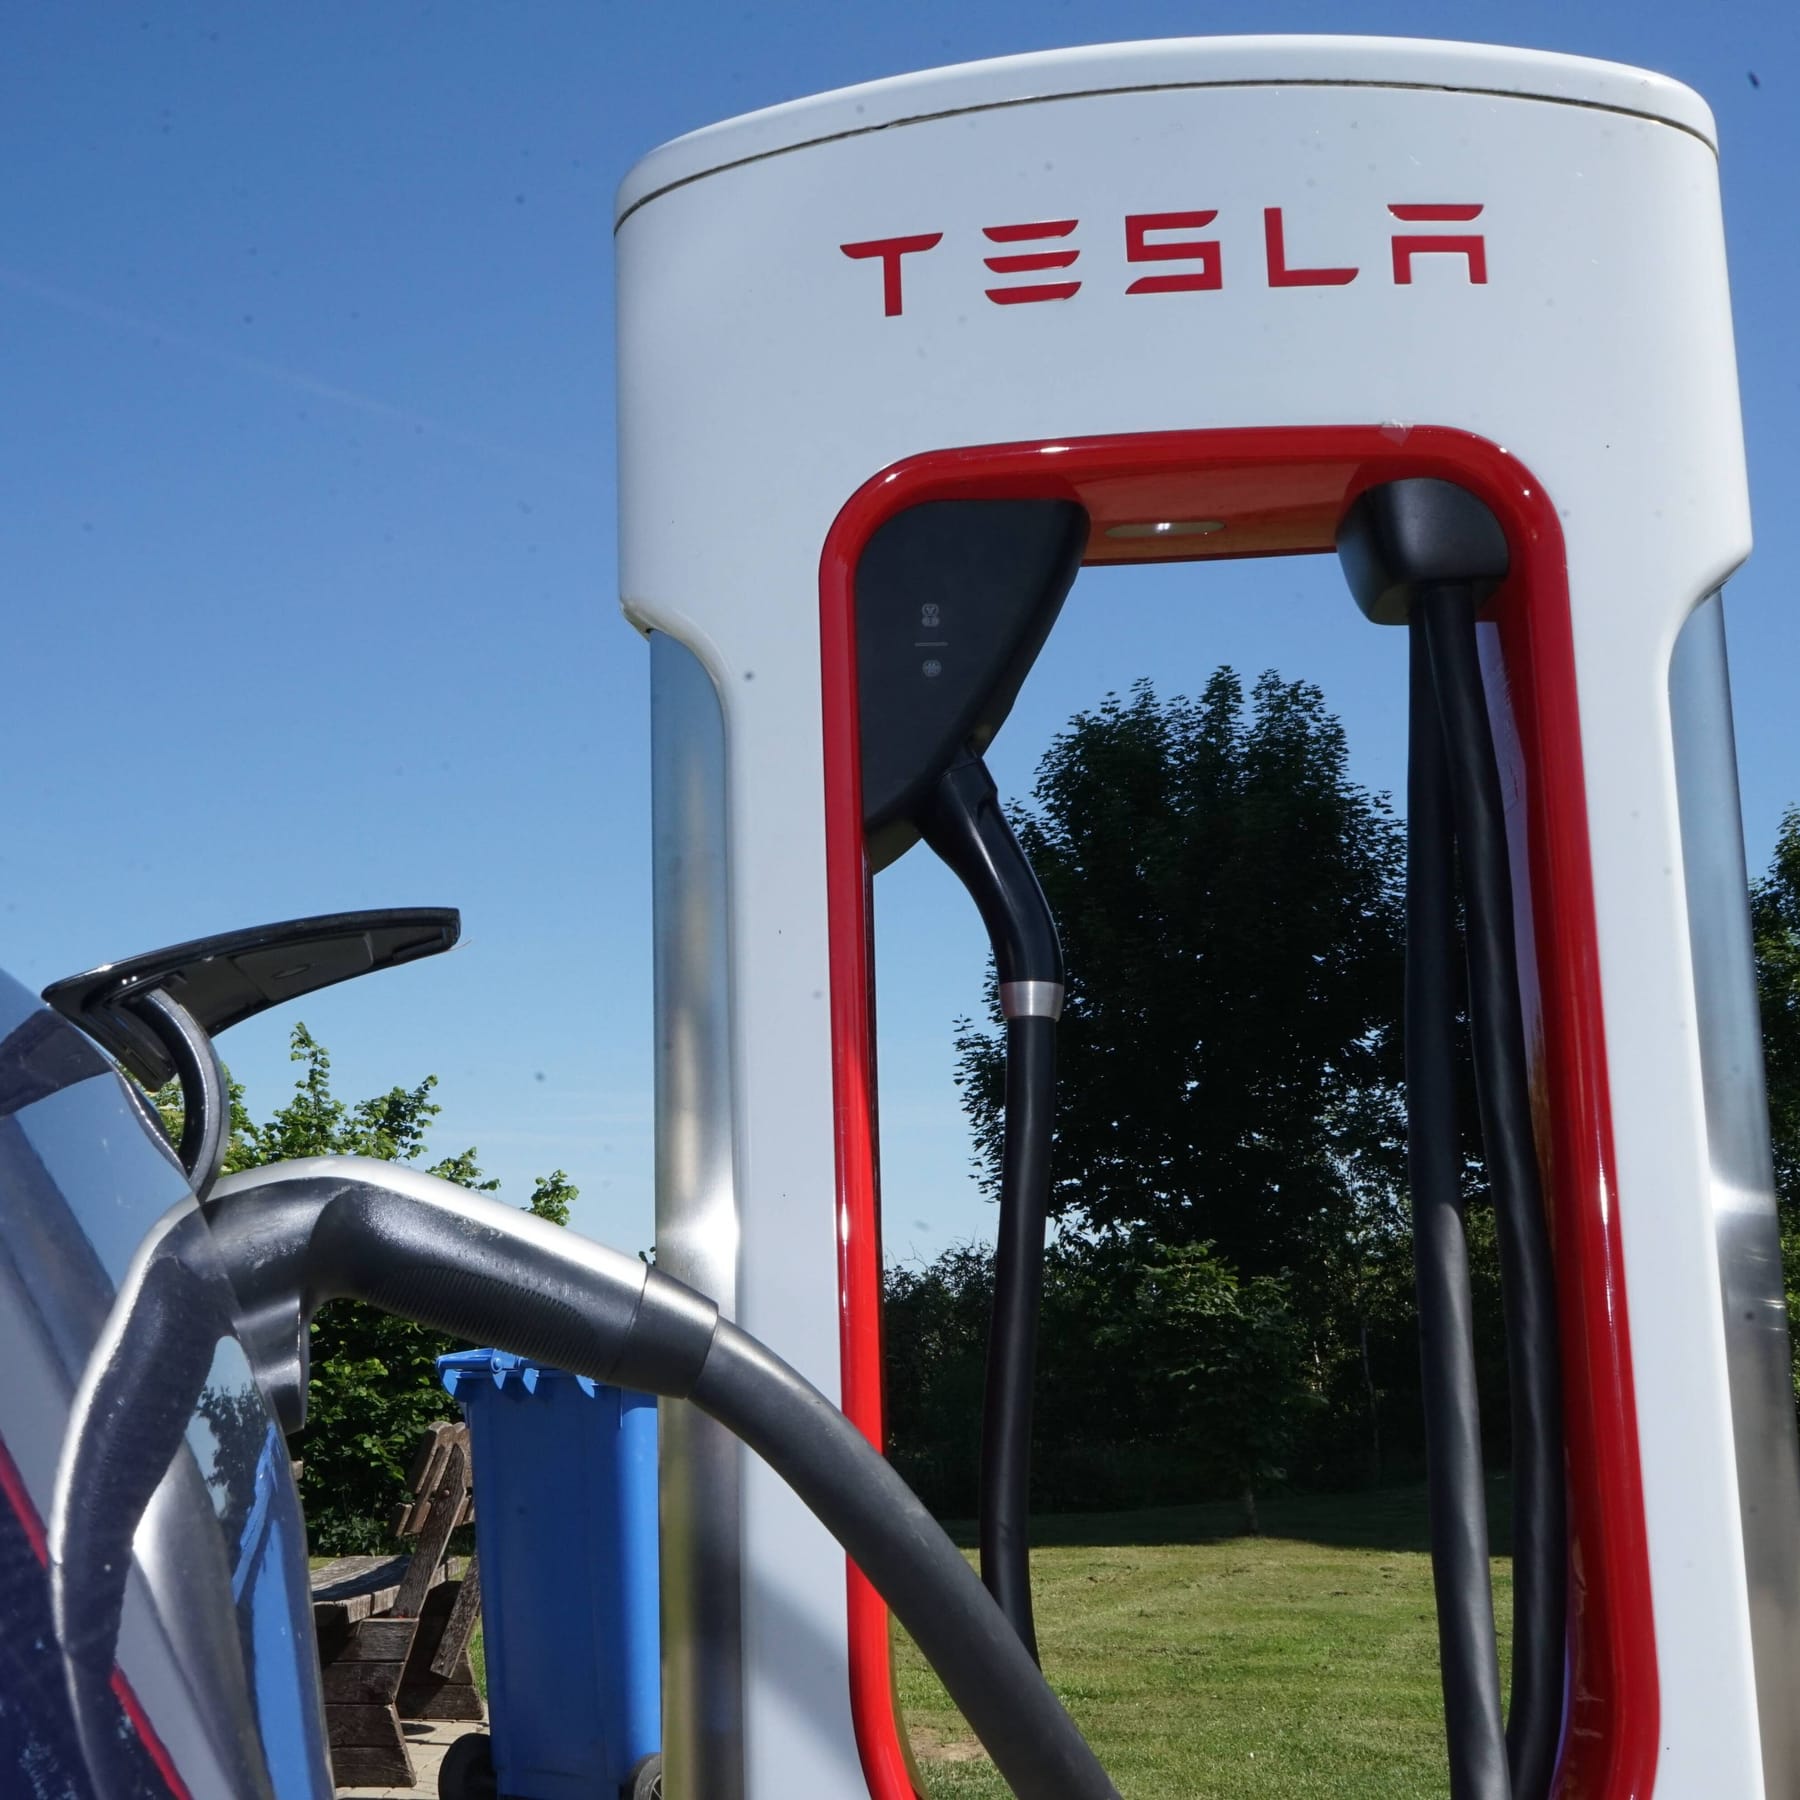 Fahrer verklagt Tesla wegen Ladestationen – das ist der Grund